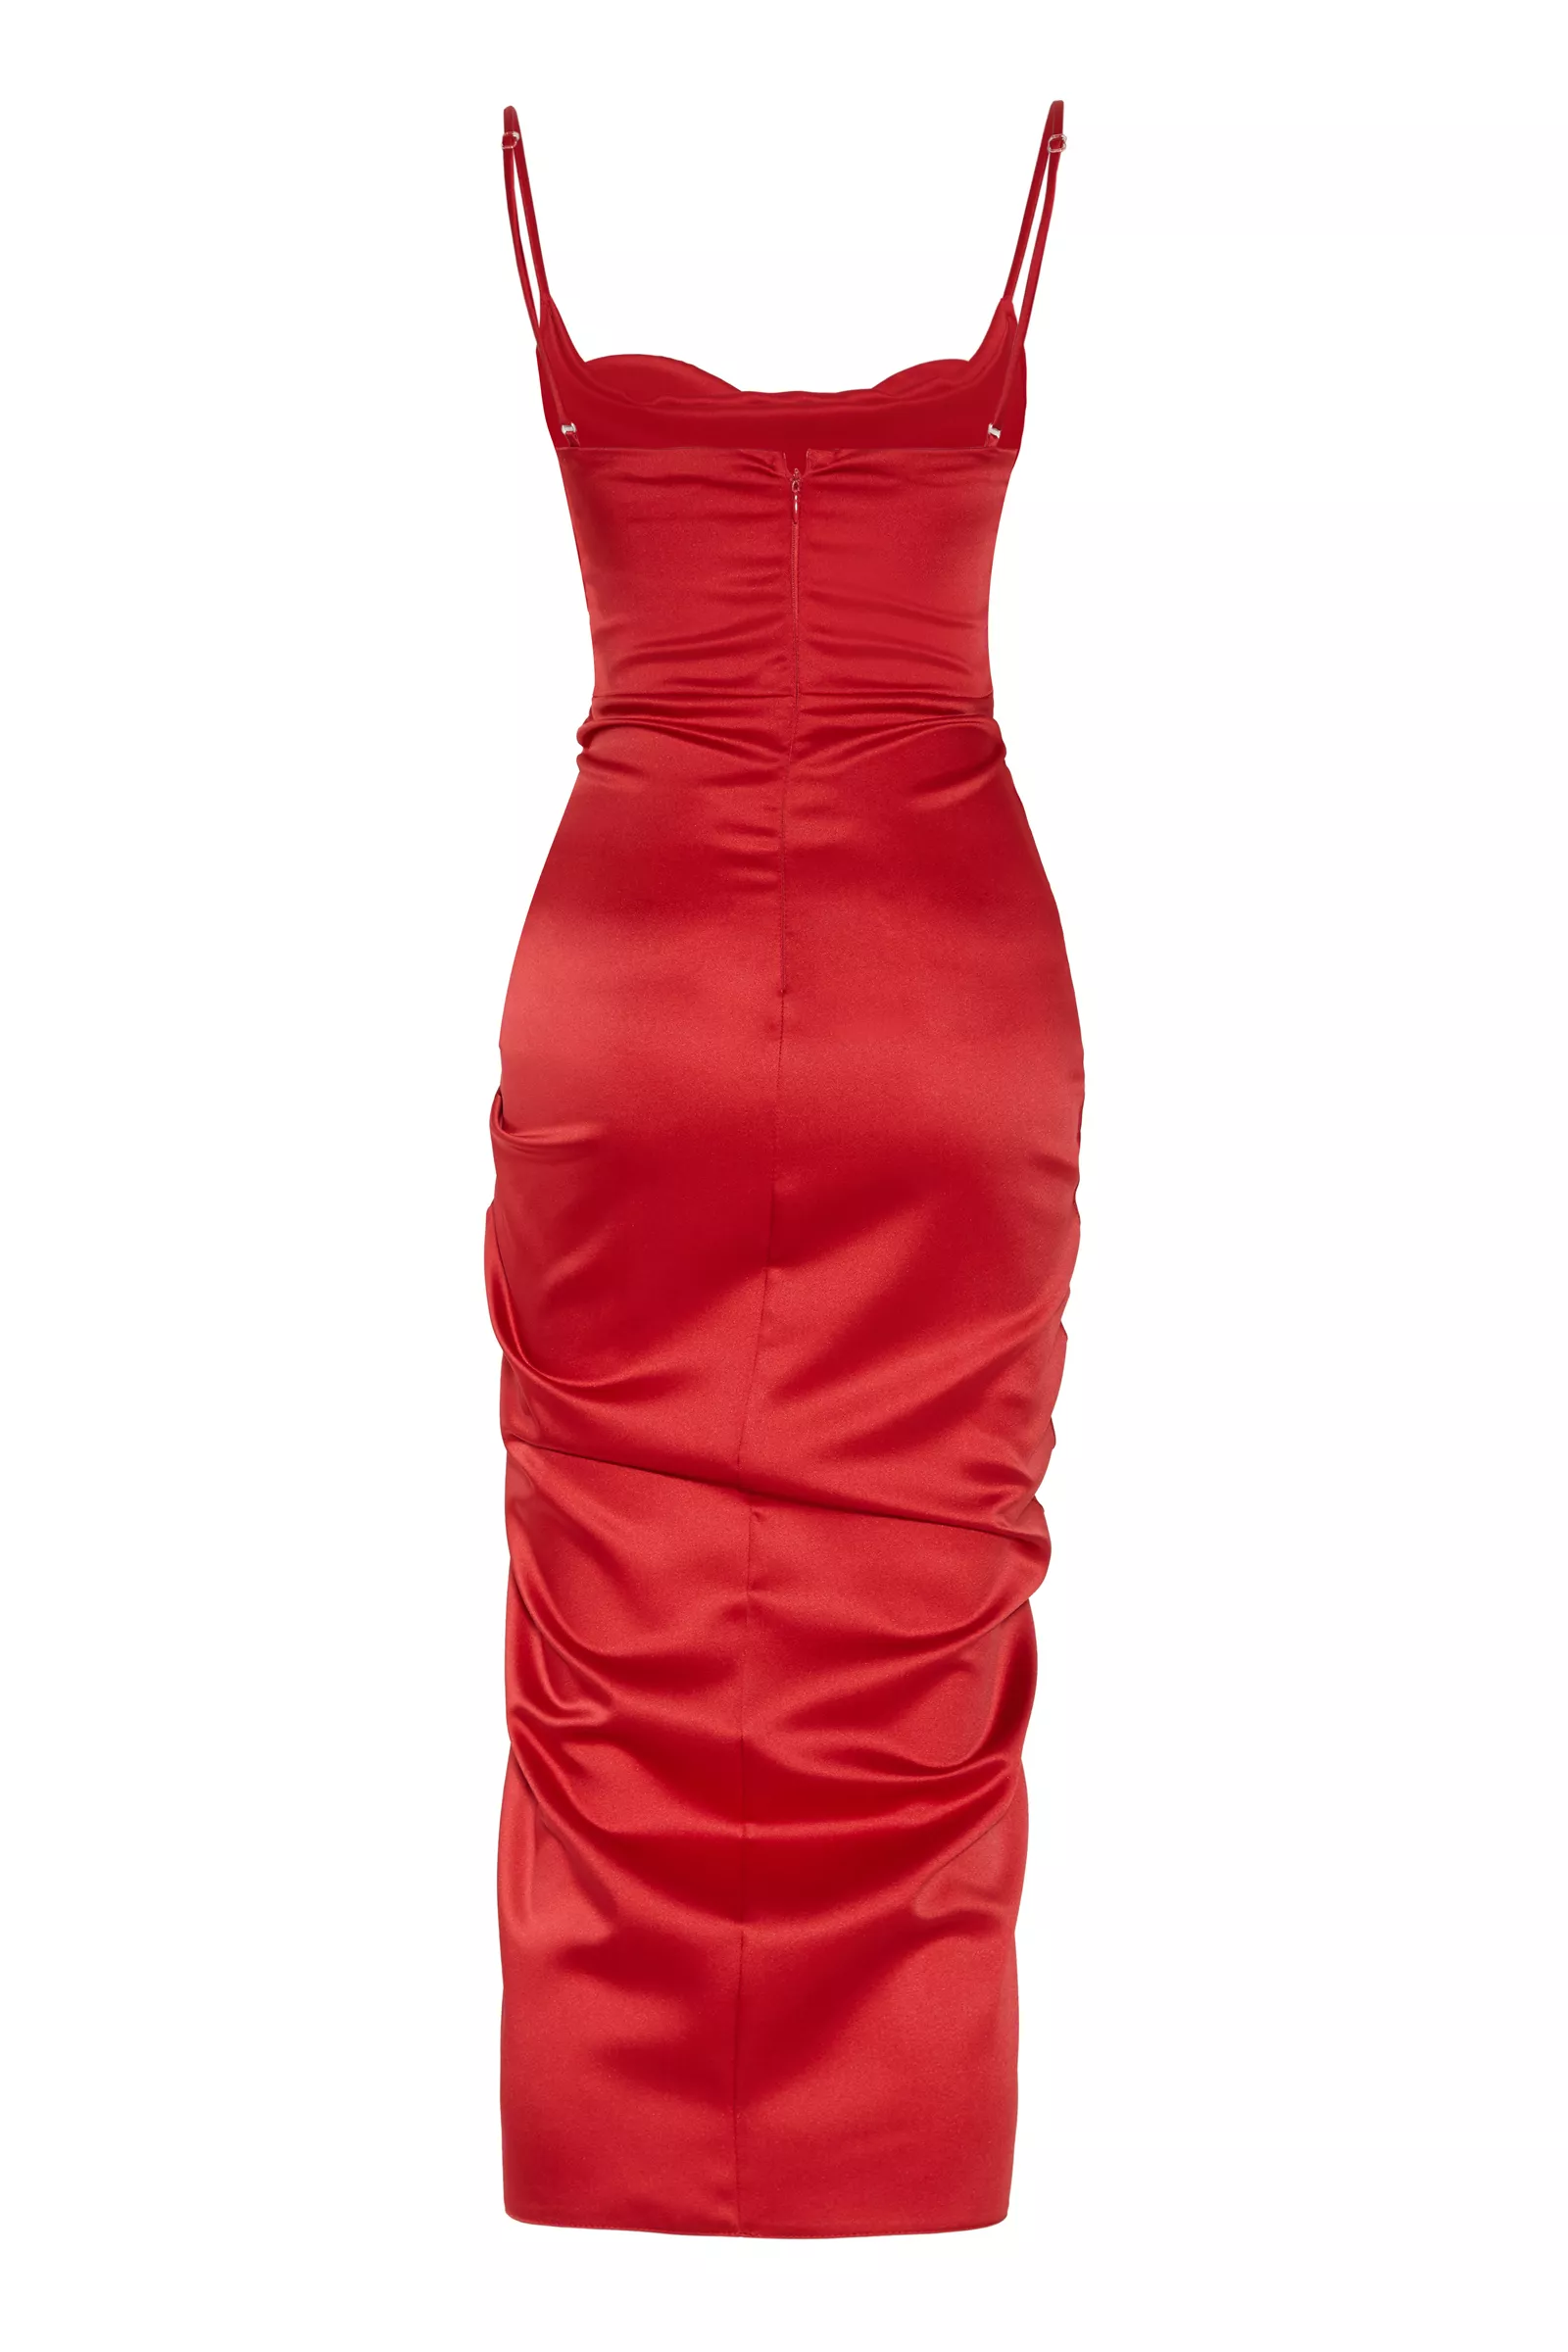 Red satin sleeveless maxi dress